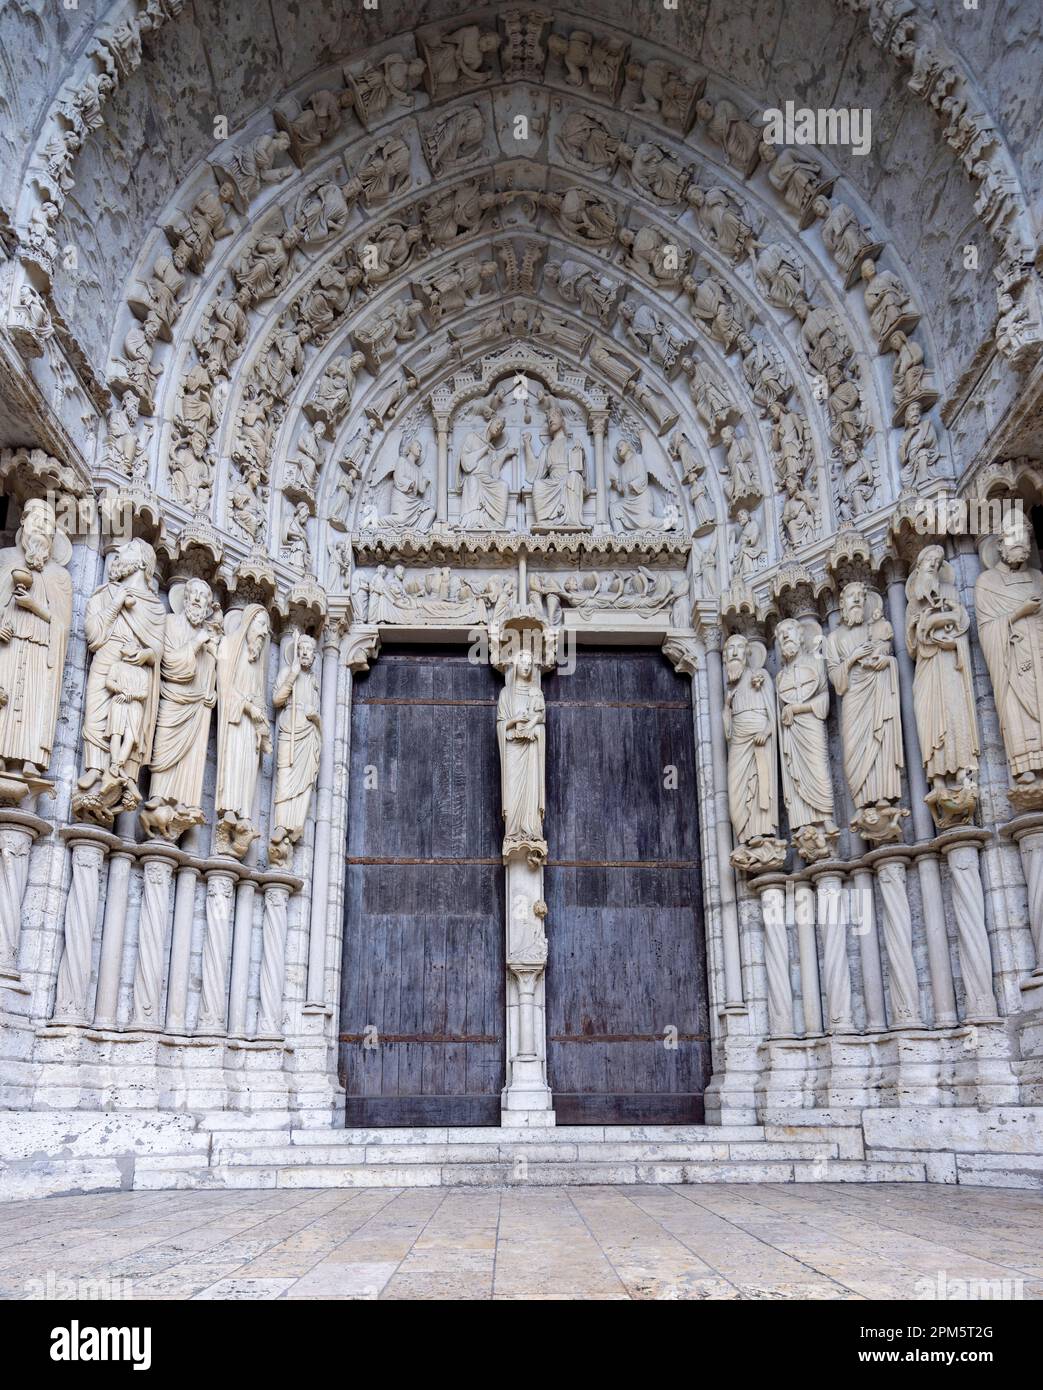 Porte centrale, portail du transept nord, cathédrale de Chartres, France Banque D'Images